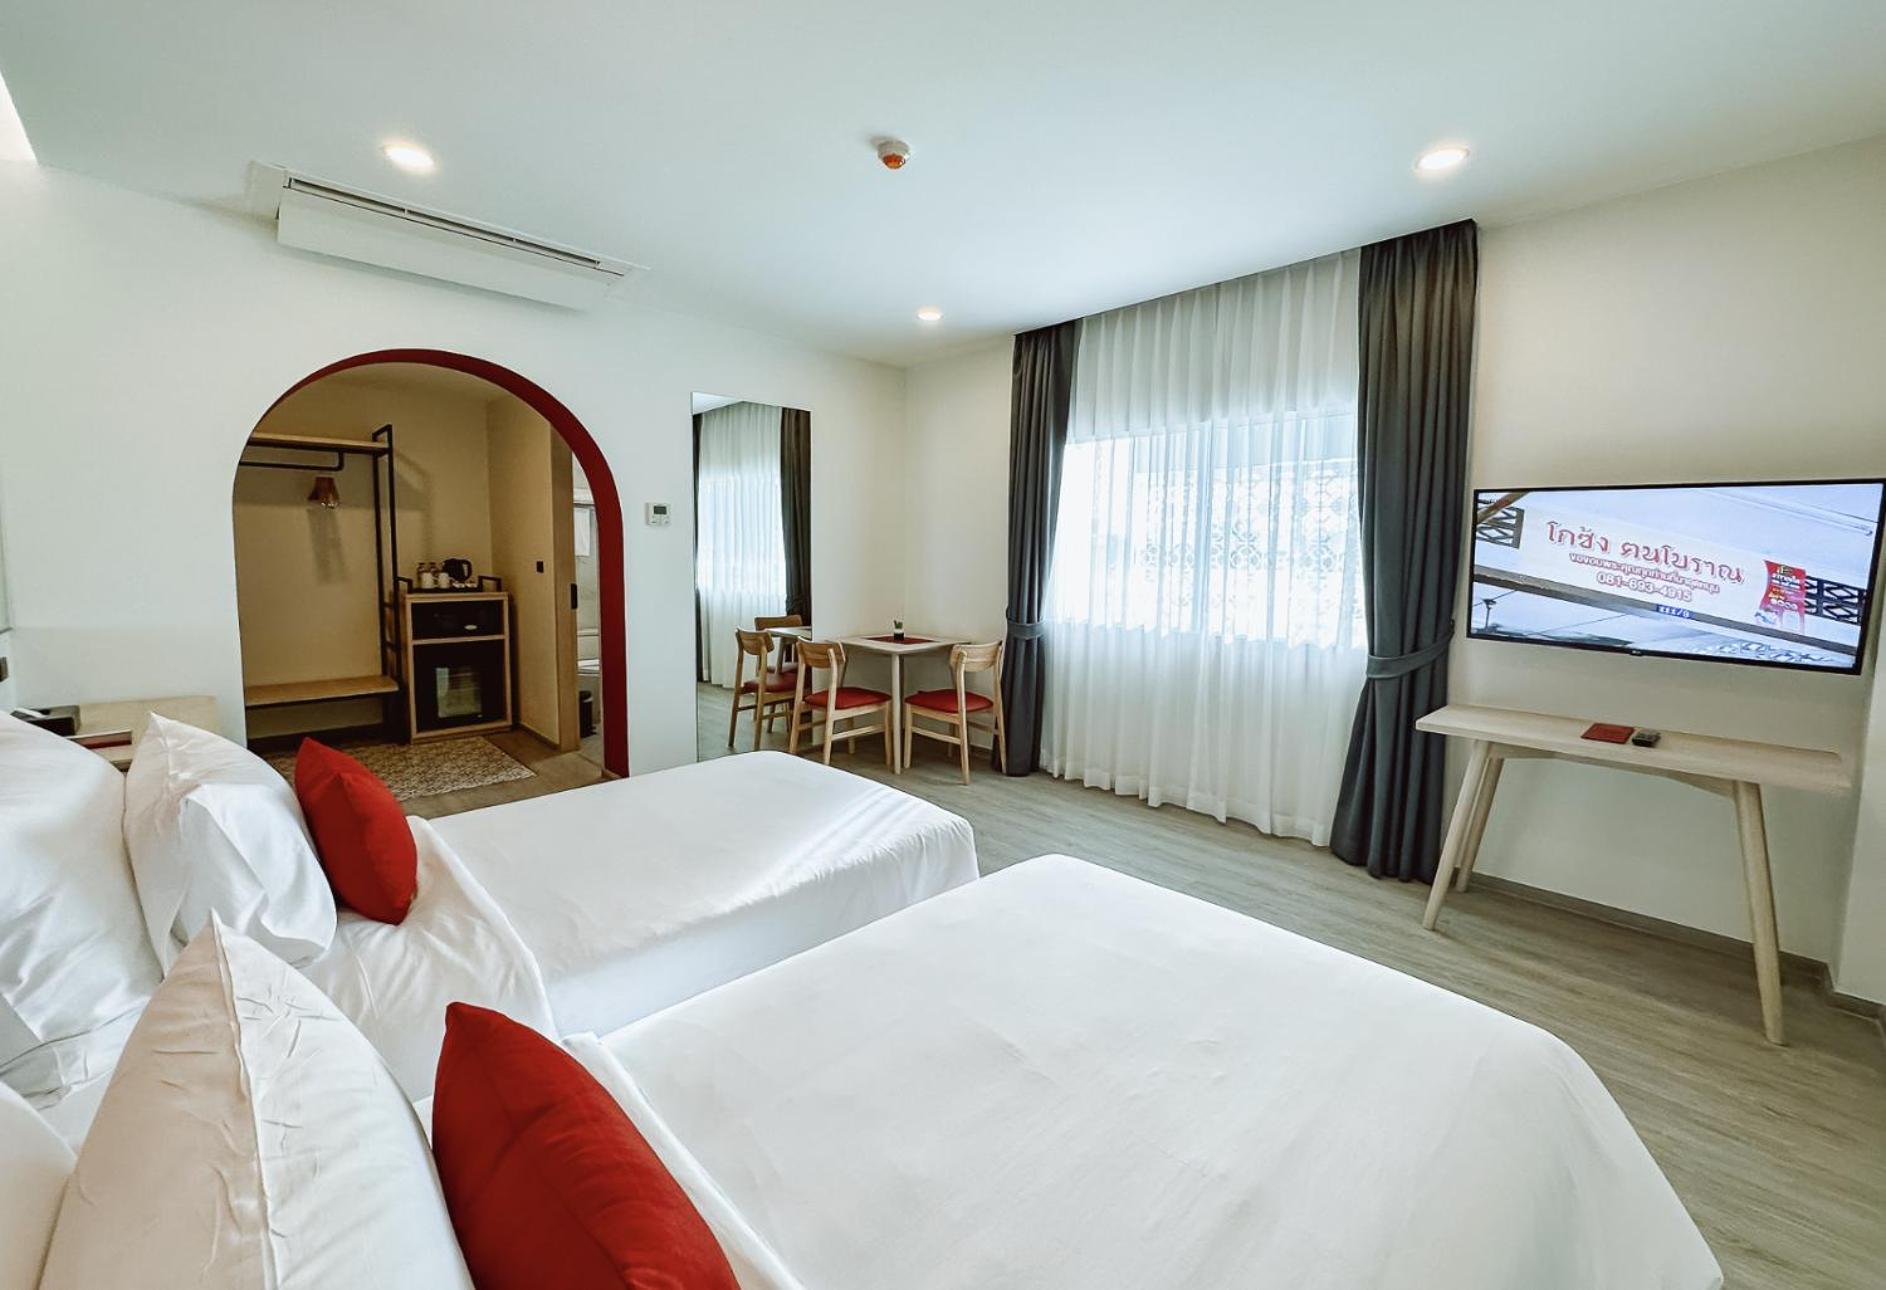 Hotel Midtown Ratsada Phuket Extérieur photo